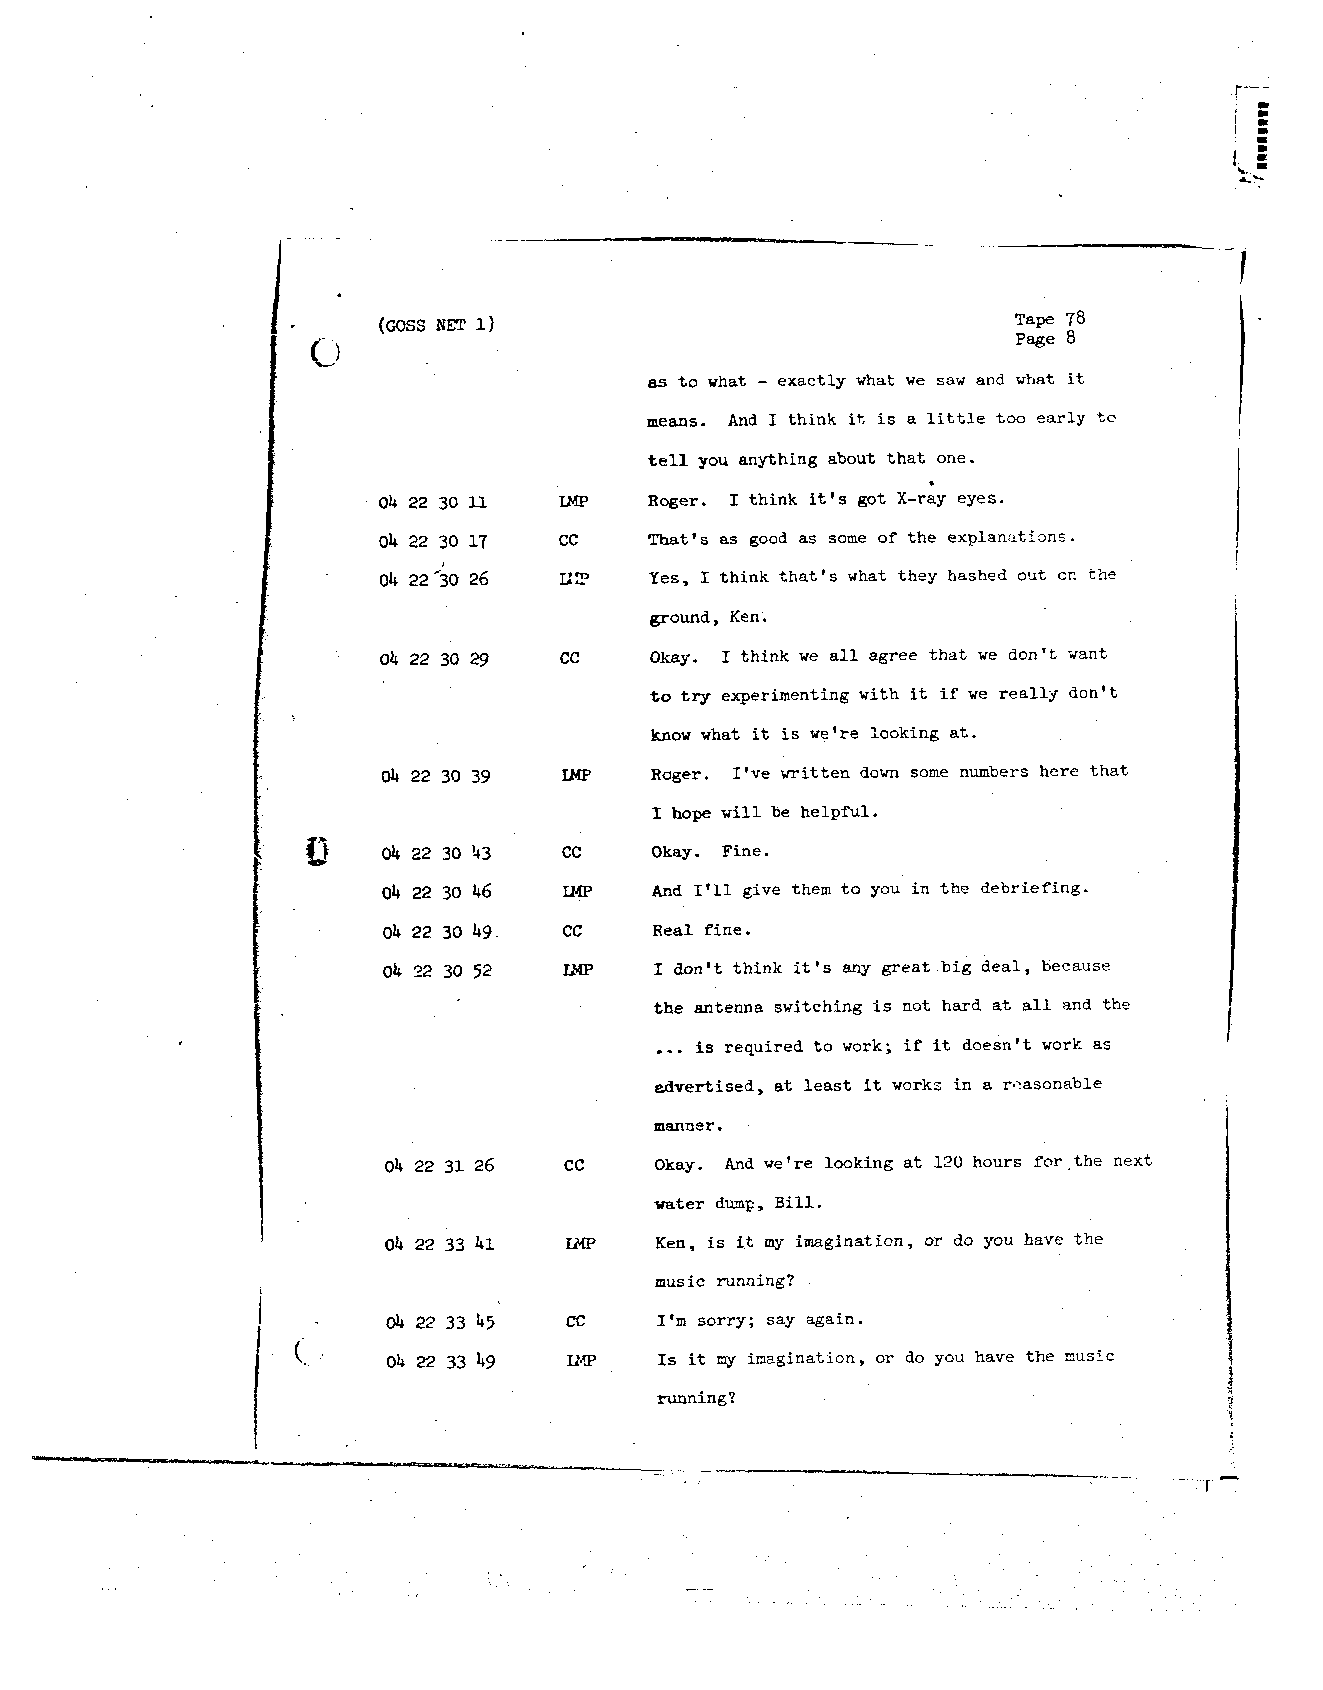 Page 648 of Apollo 8’s original transcript